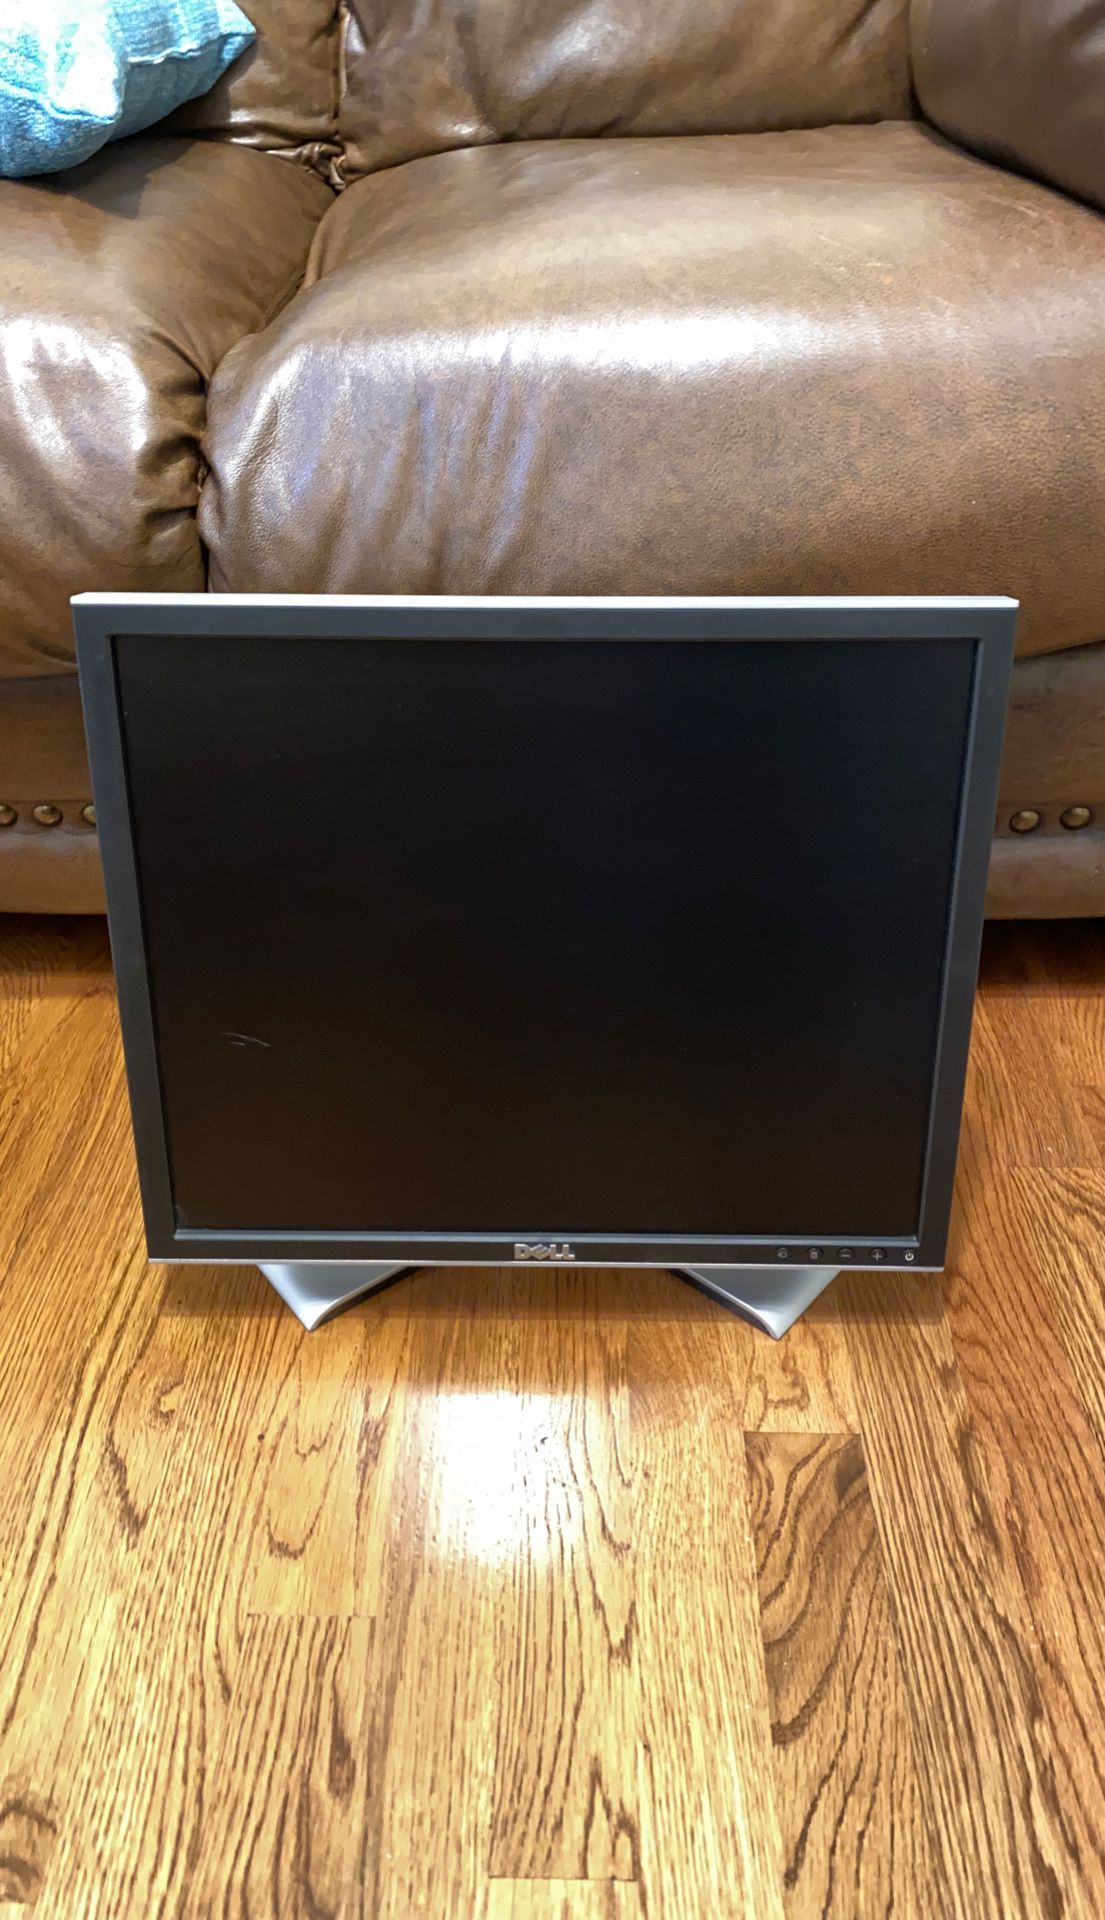 19” Dell computer monitor